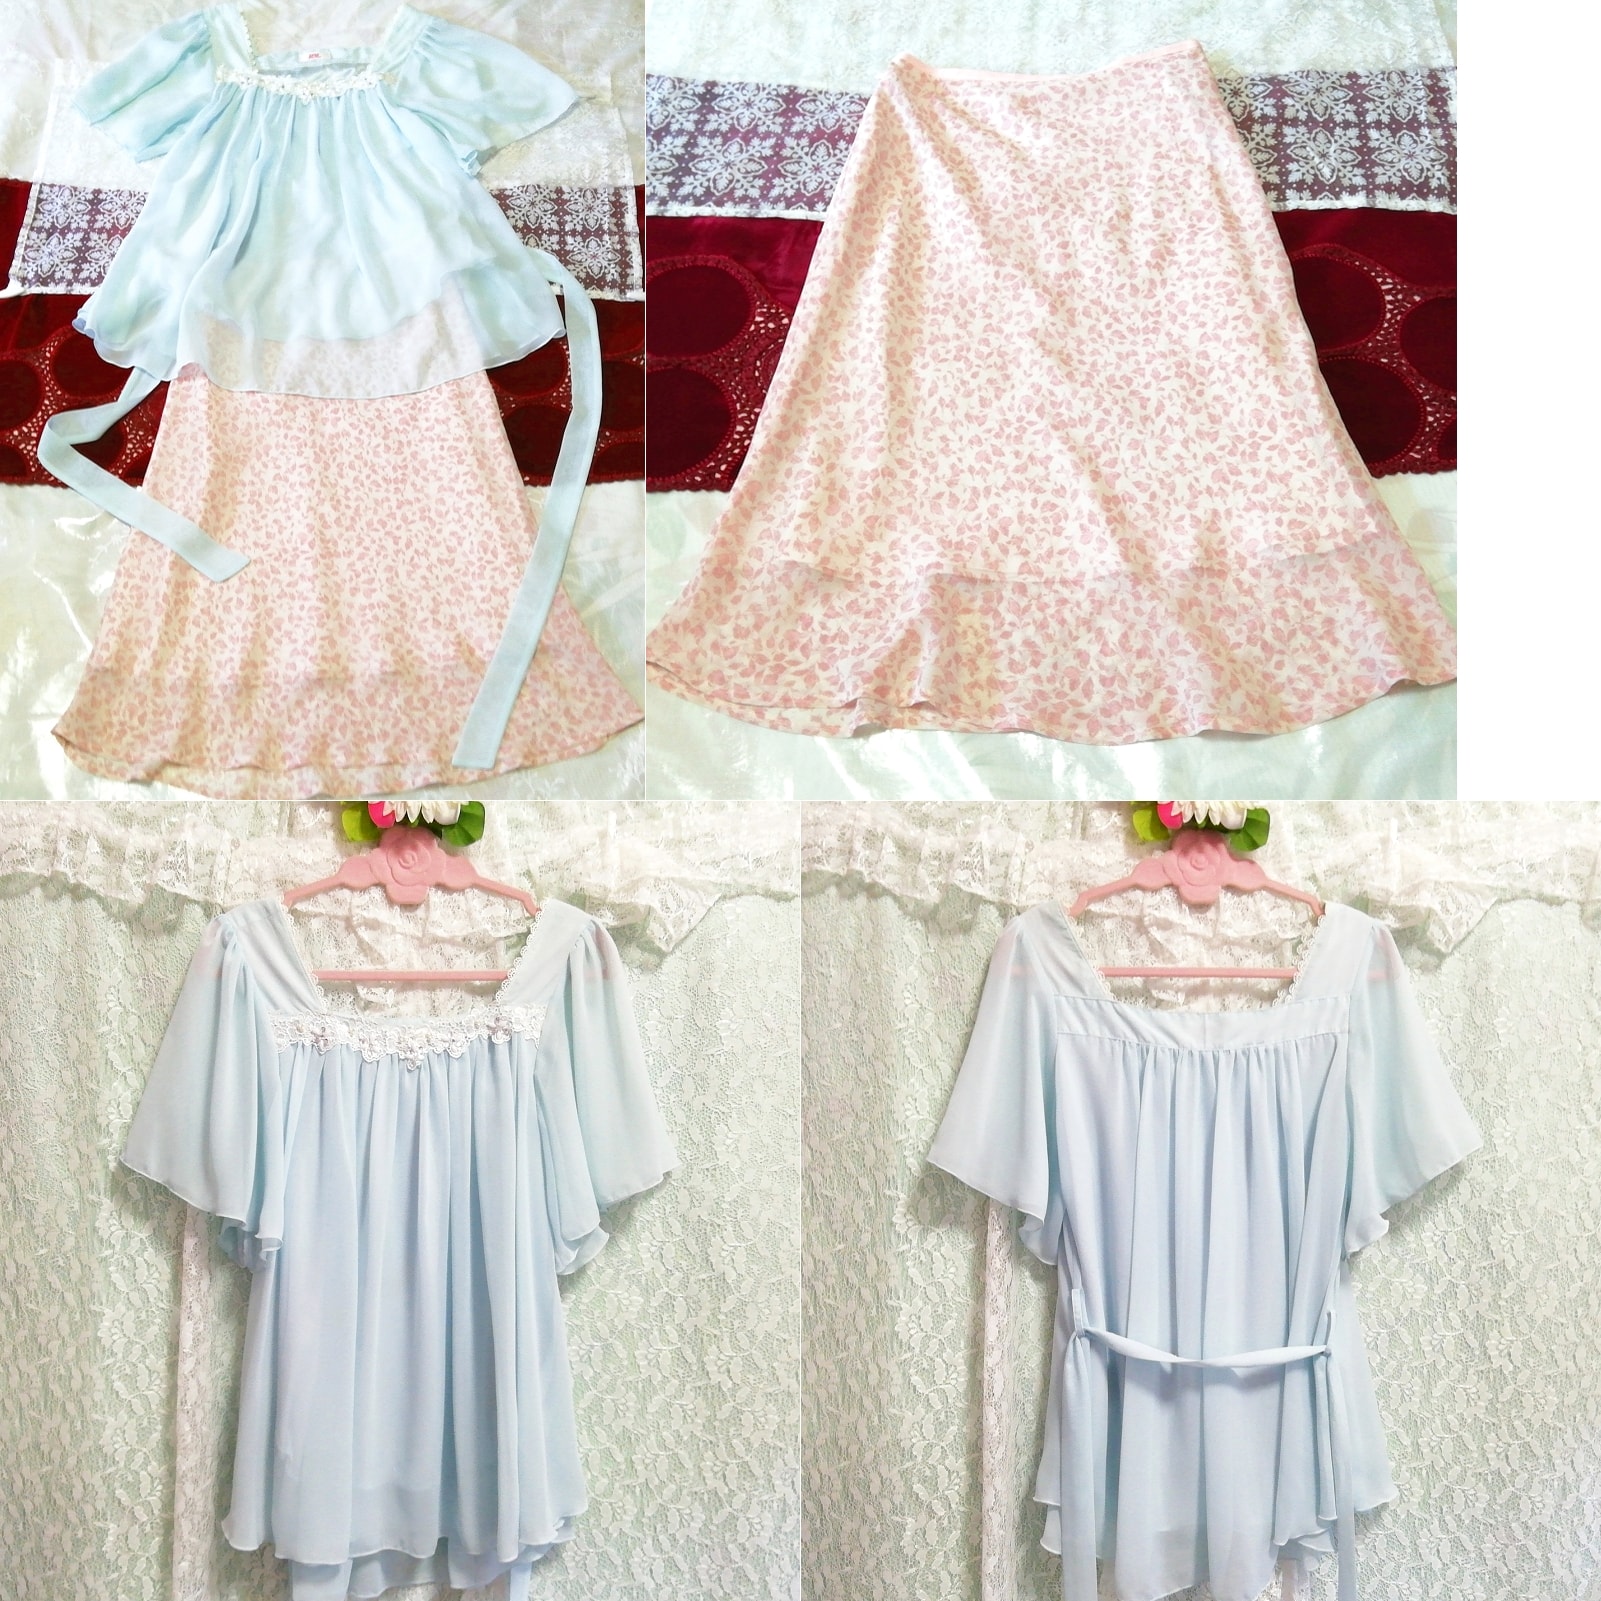 연청색 쉬폰튜닉 네글리제 나이트가운 나이트웨어 핑크꽃무늬 스커트 2P, 패션, 숙녀 패션, 잠옷, 잠옷